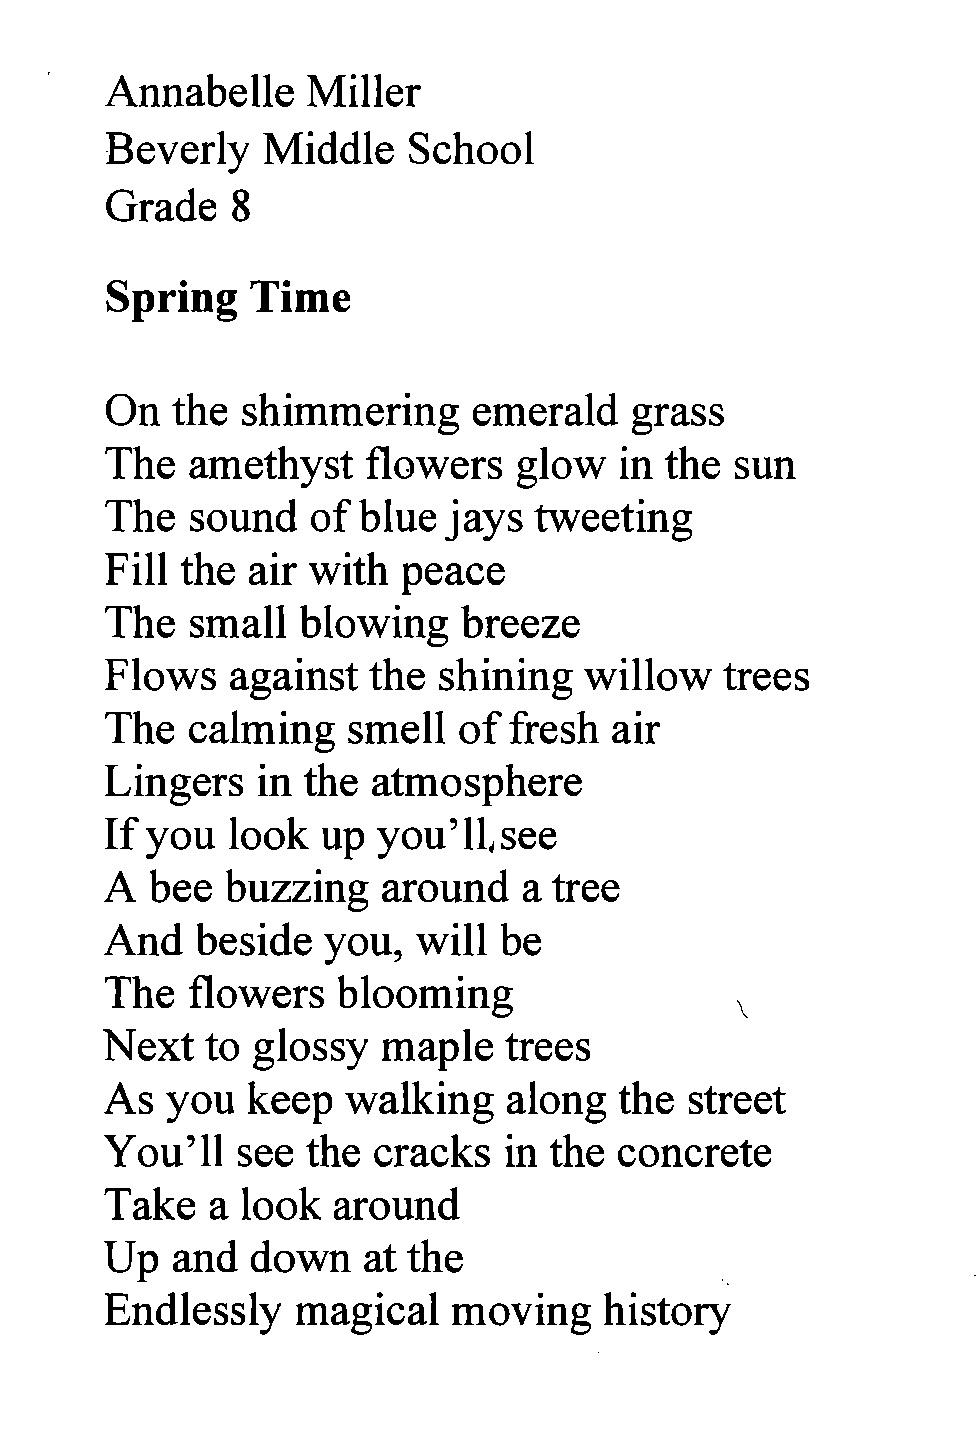 Miller poem